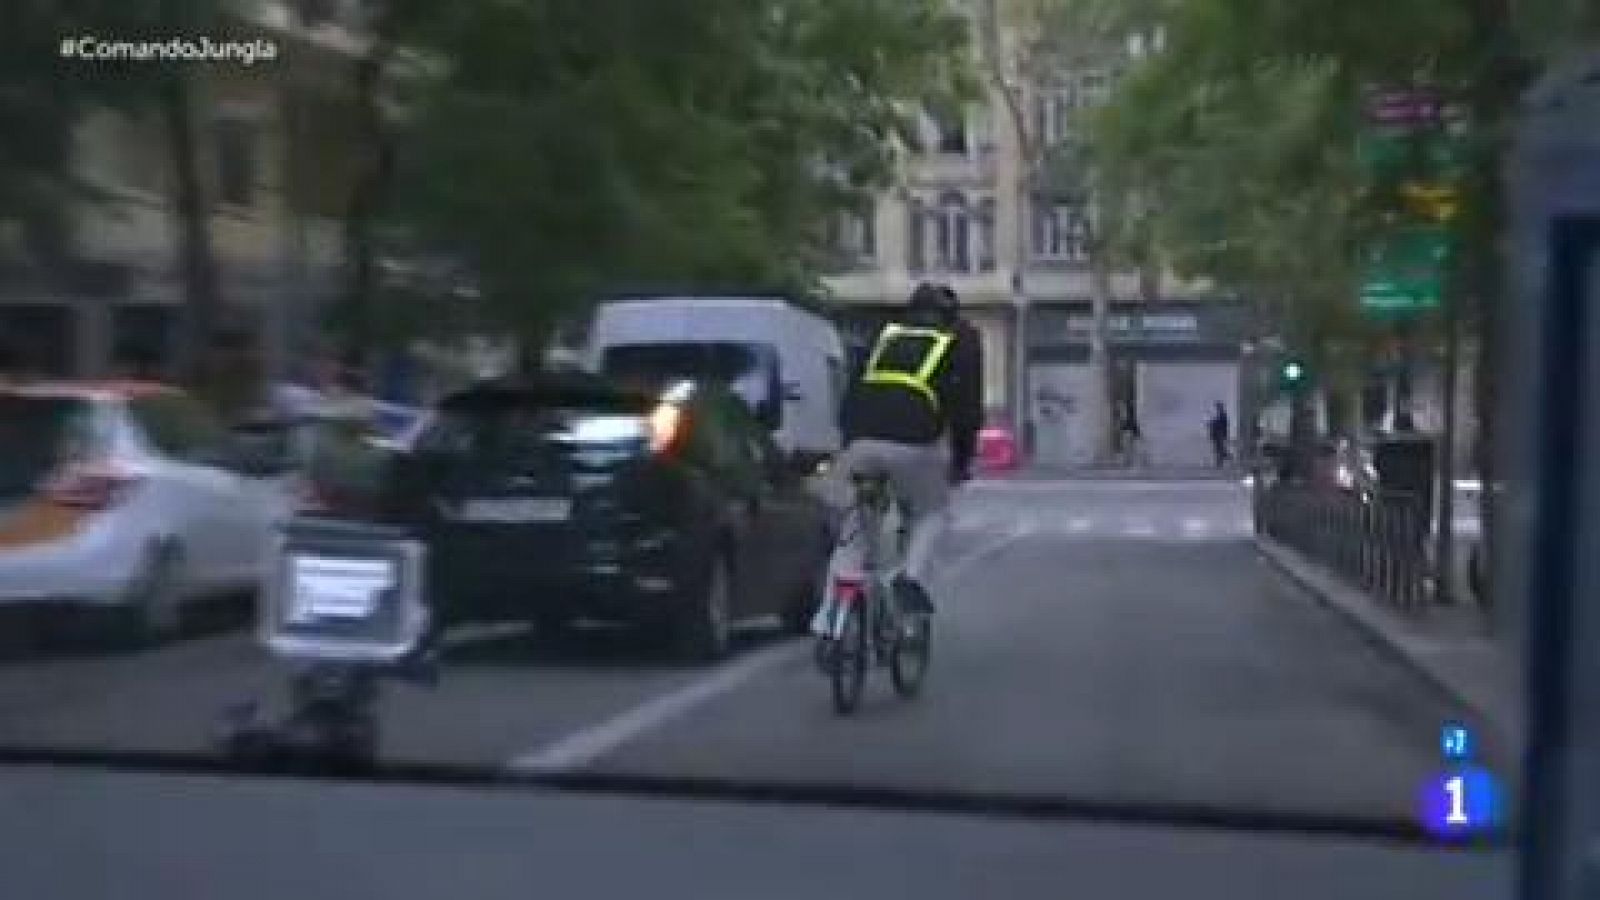 Comando actualidad - Jungla de asfalto: Fernando es taxista, ciclista y motero